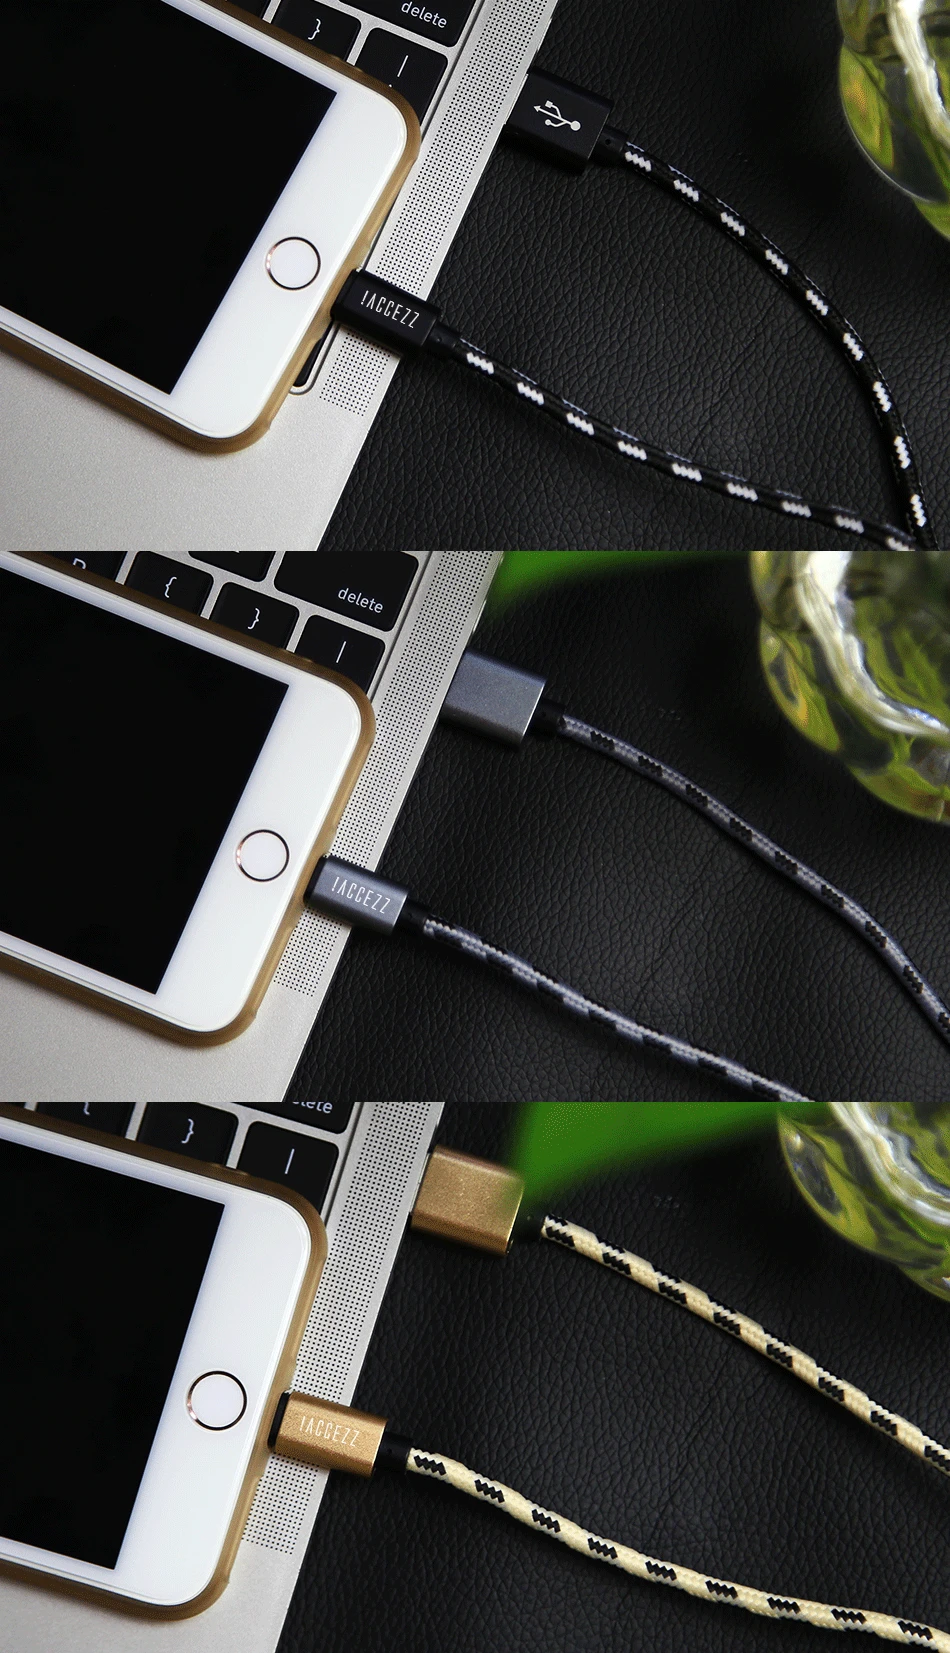 ACCEZZ 2.4A освещение USB кабель для Apple iPhone Xs Max Xr X 8 7 6 6s Plus 5S SE iPad Mini данные синхронизировать мобильный телефон кабели зарядного устройства